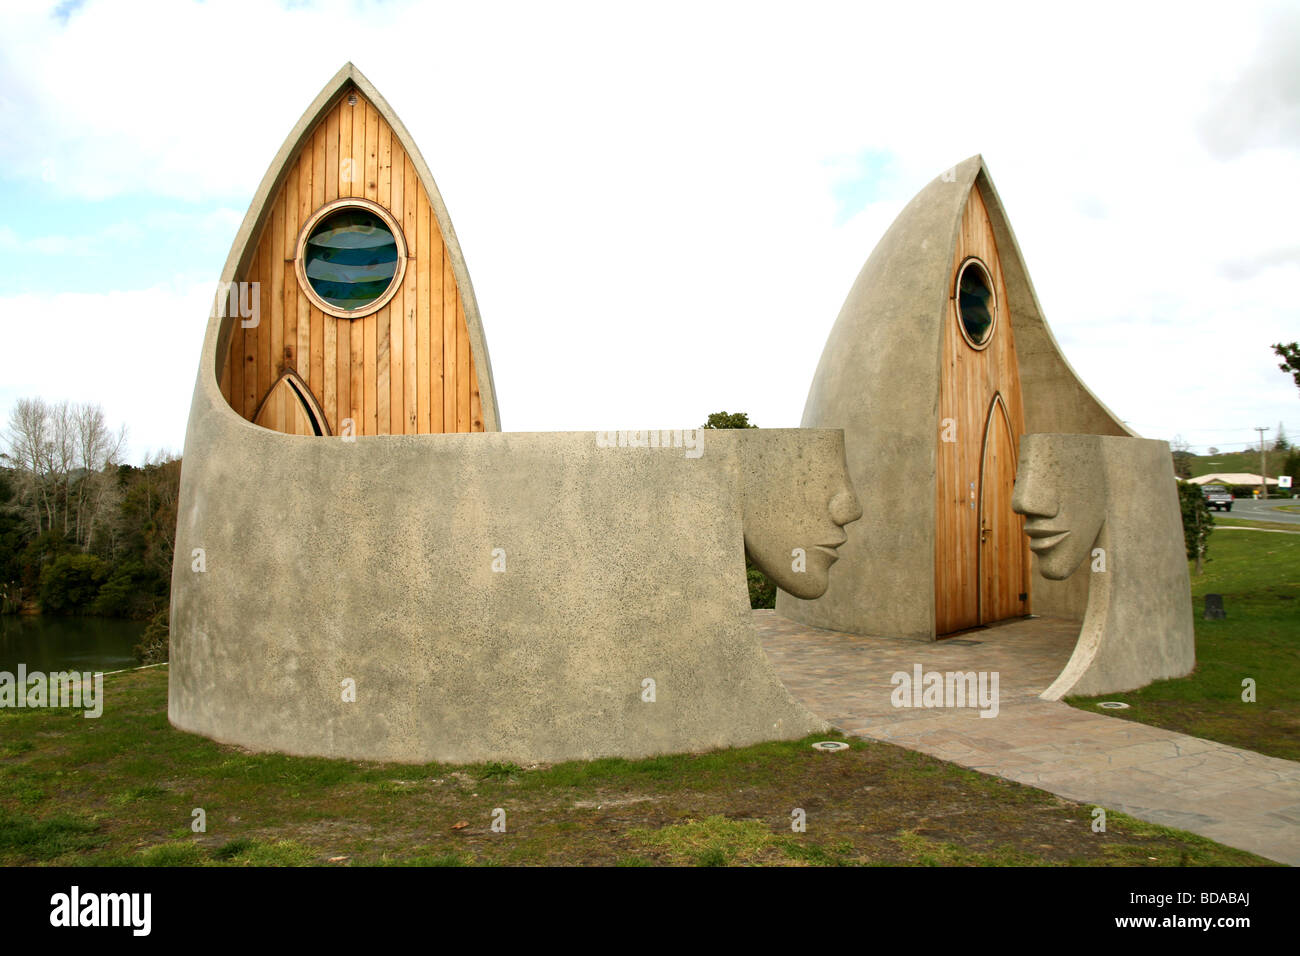 Architetto disegnò i bagni pubblici in Nuova Zelanda Foto Stock